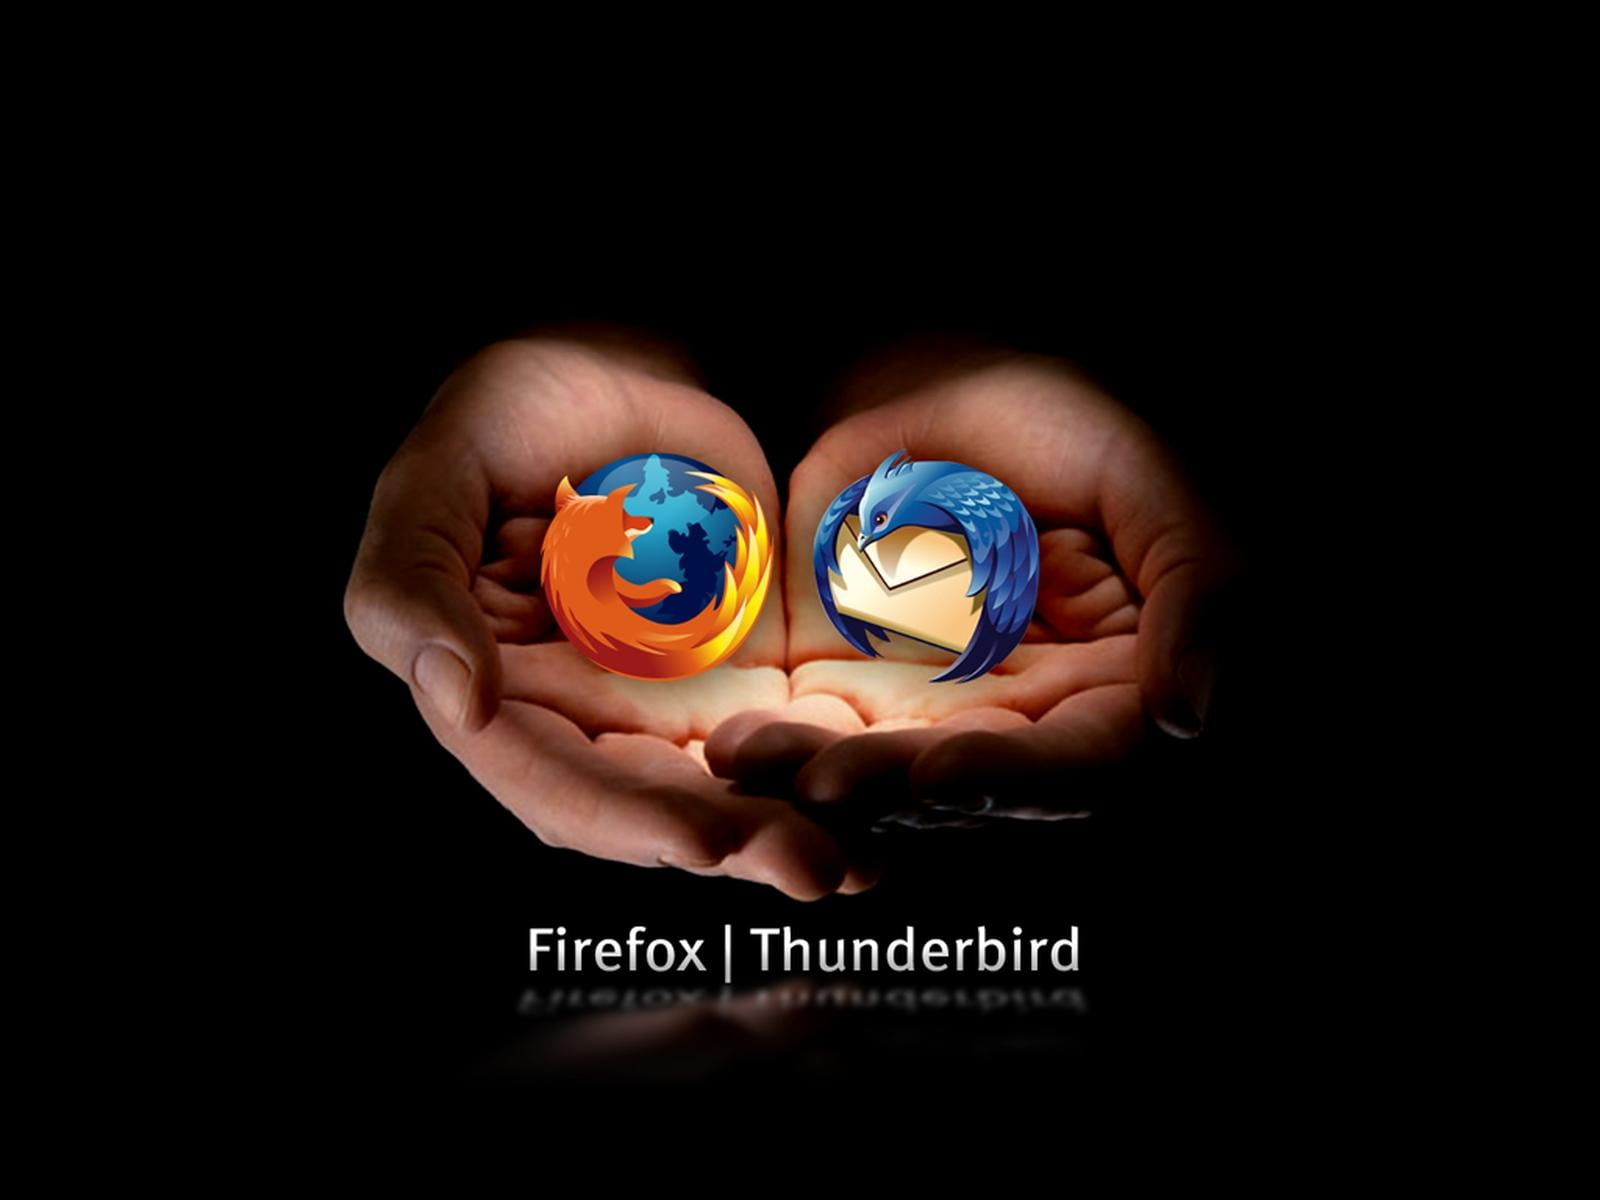 Firefox Thunderbird, Mozilla Firefox and Thunderbird logos, Computers